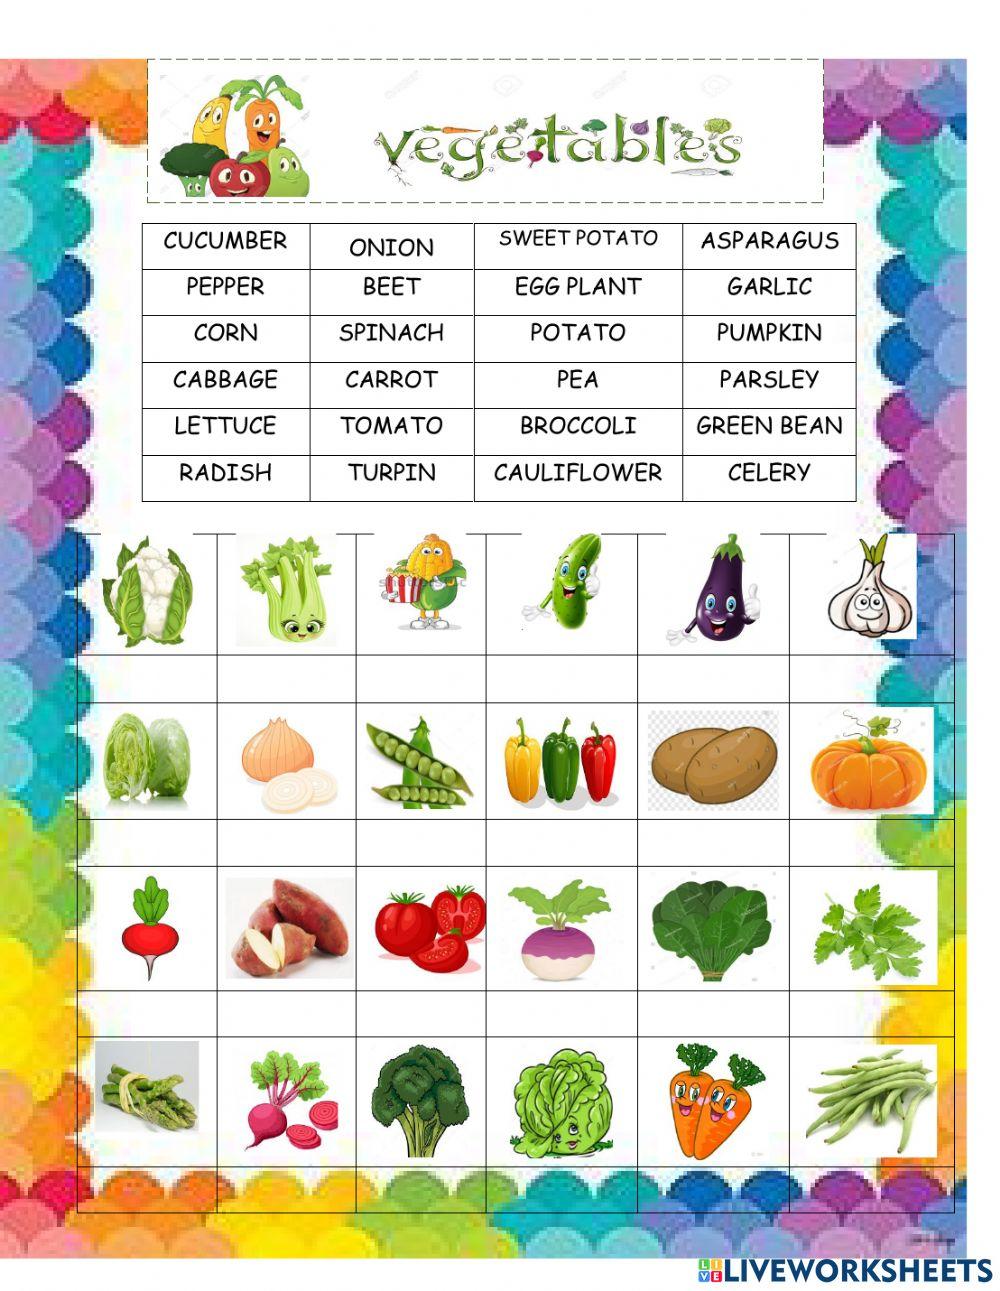 Vegetables 2